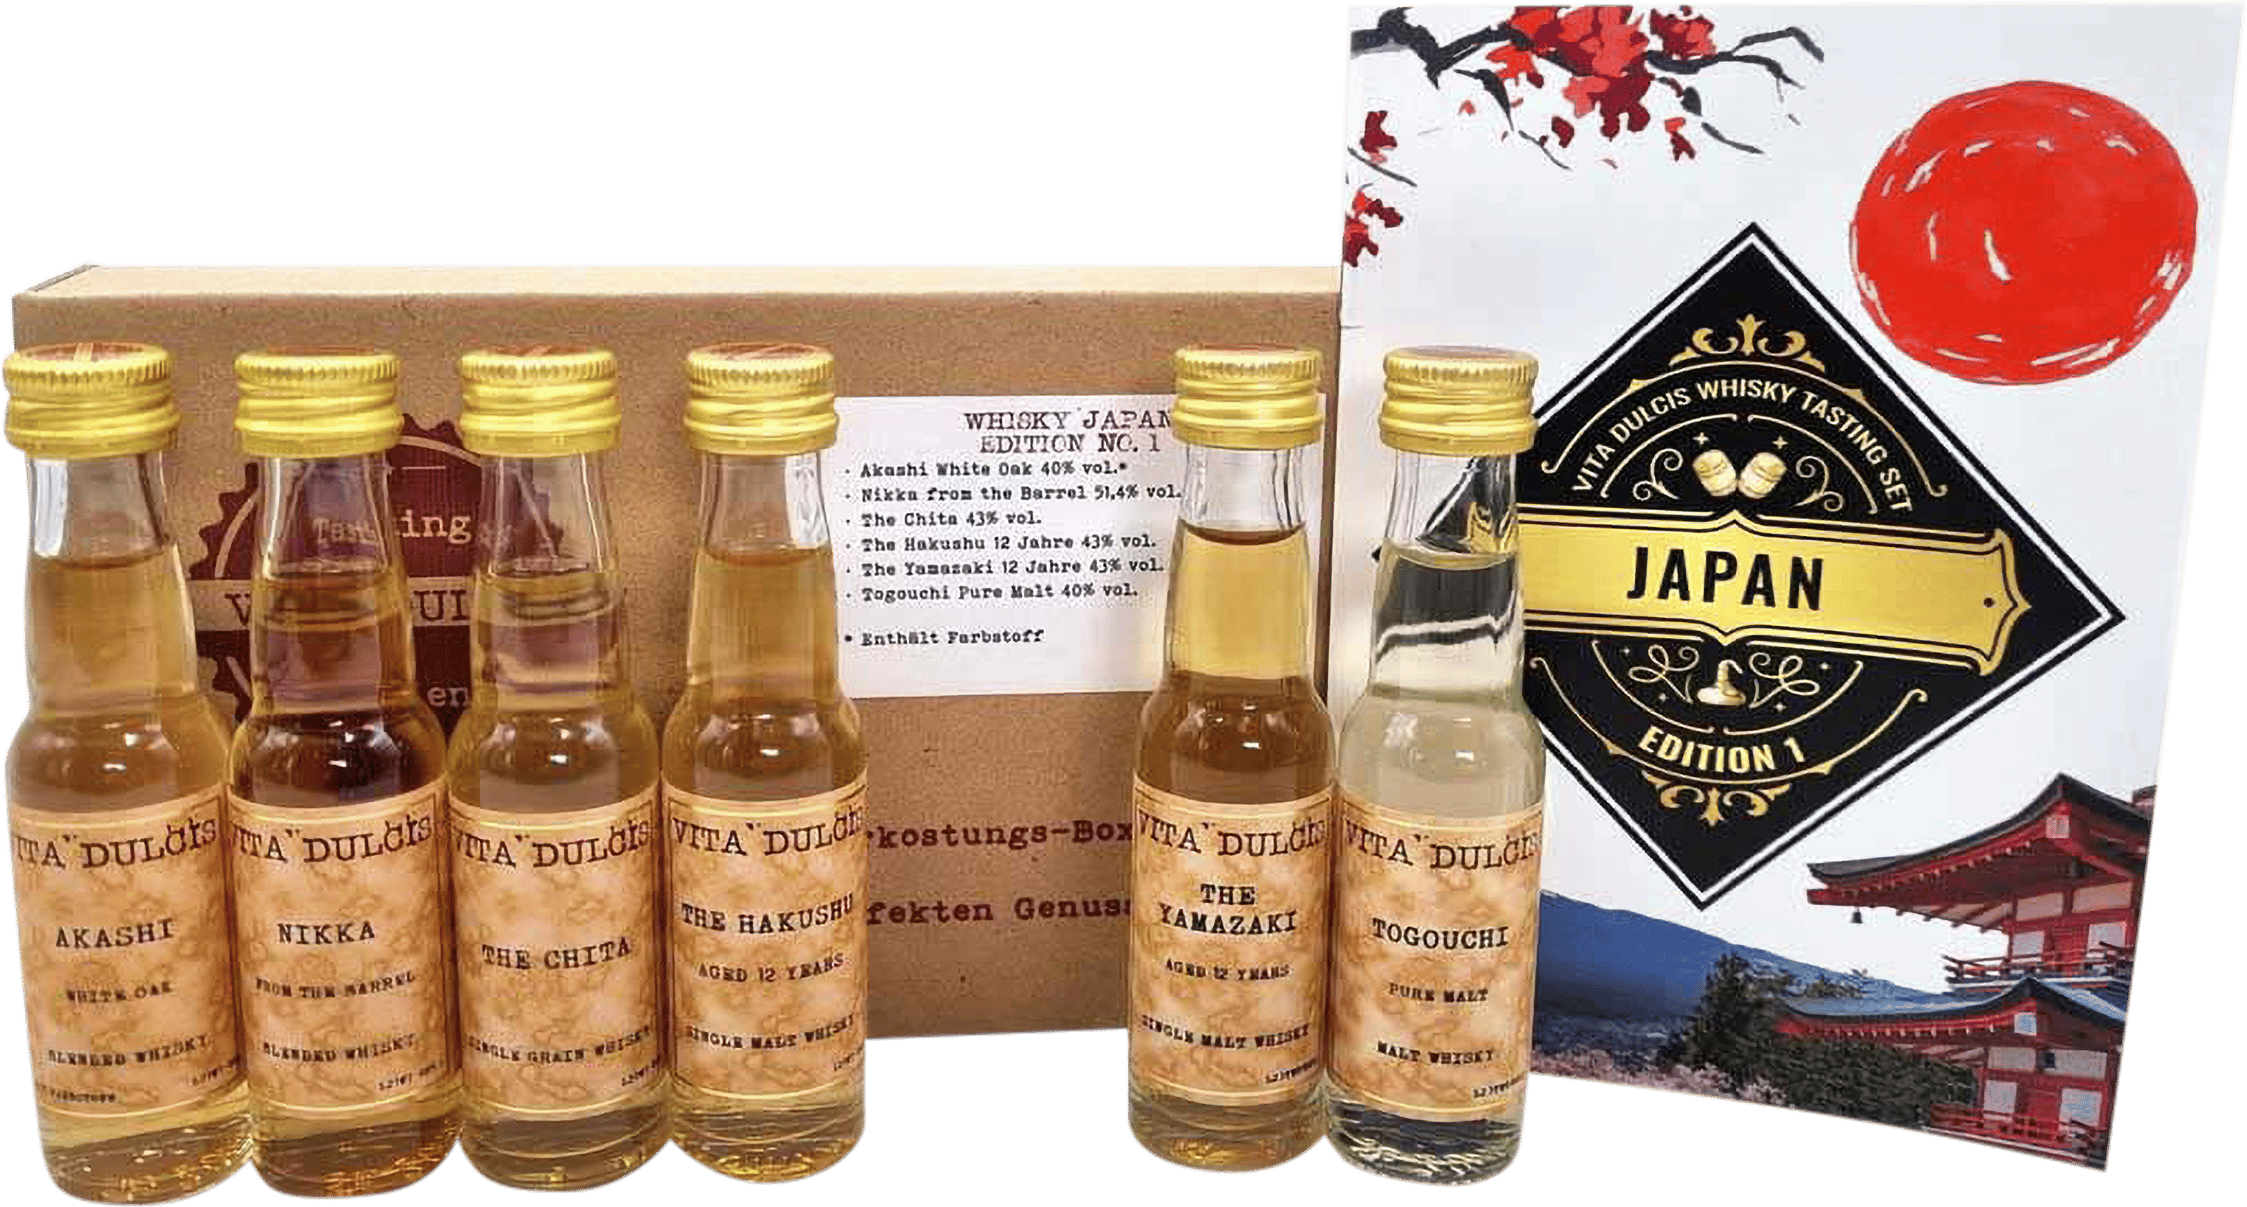 Whisky Tasting | & Japan kaufen Box Honest Rare